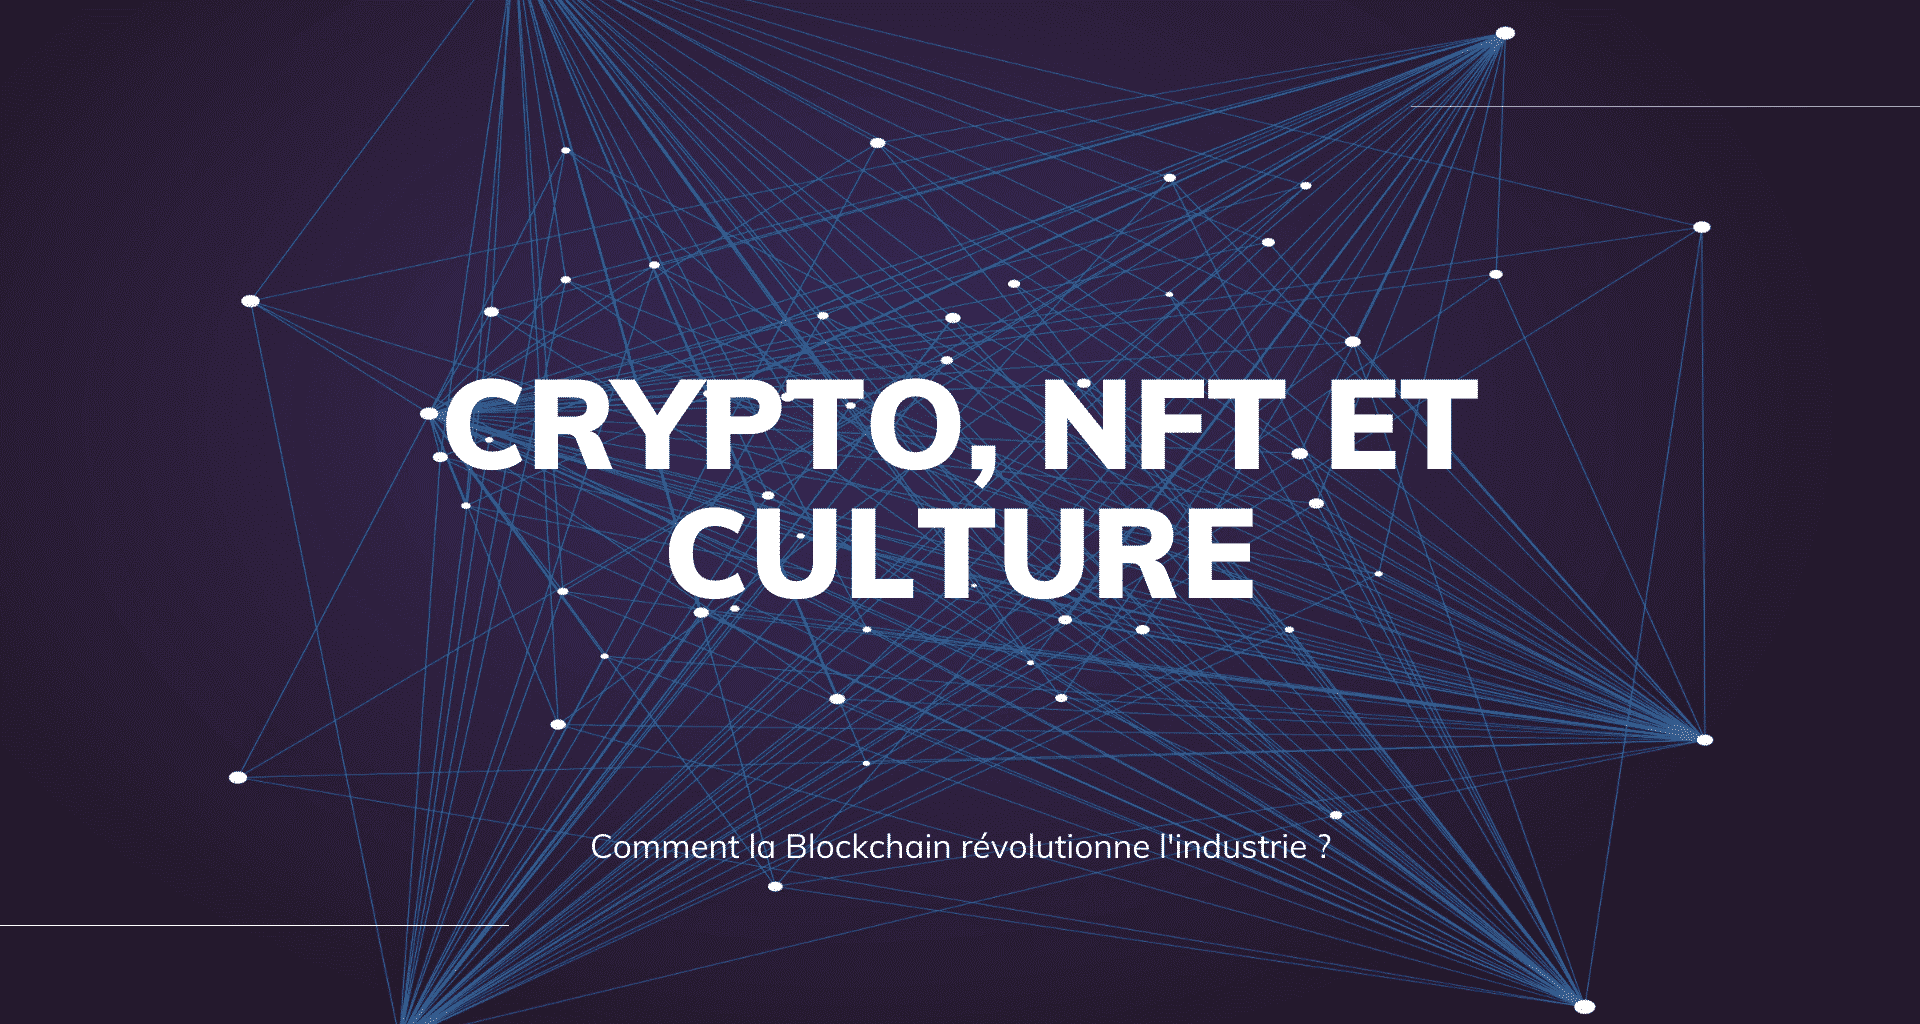 Crypto NFT